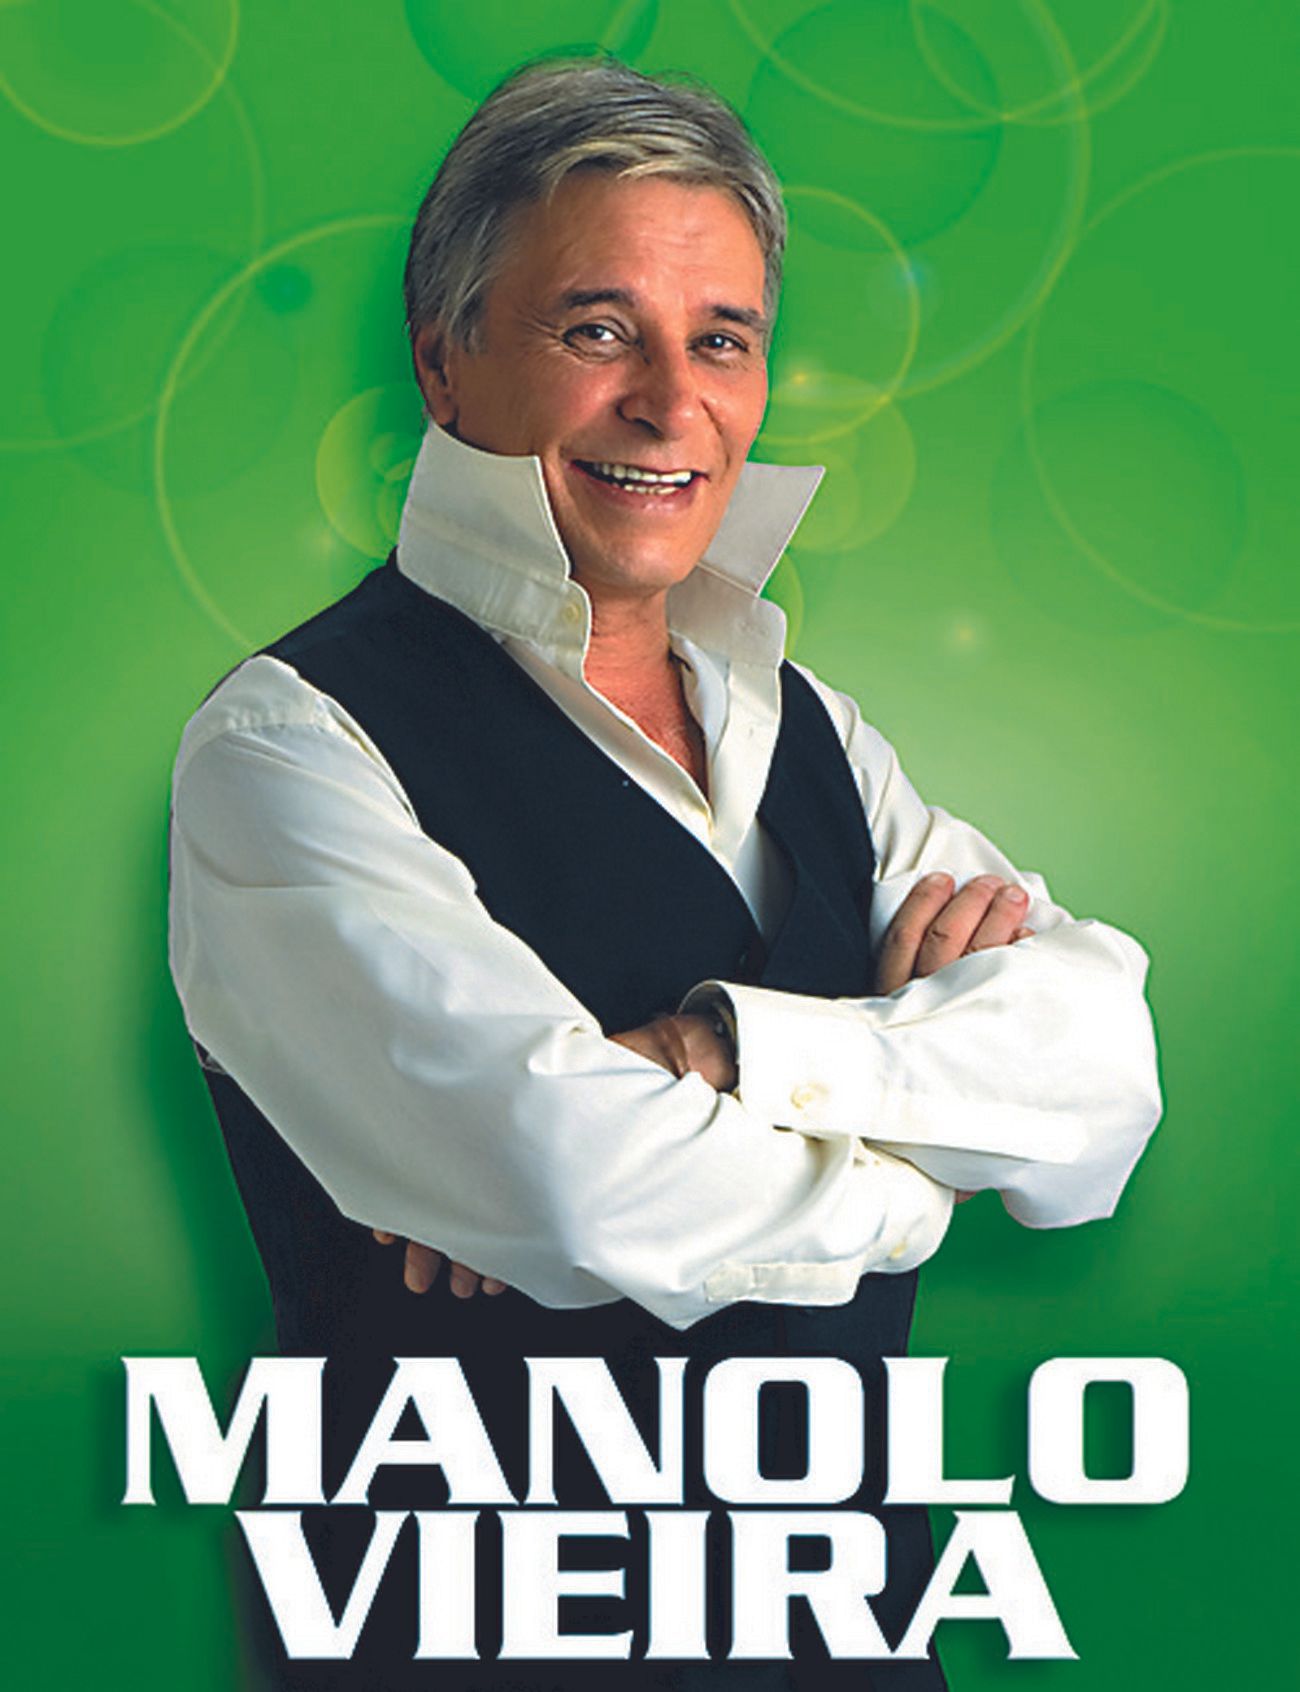 La vida de Manolo Vieira, en imágenes